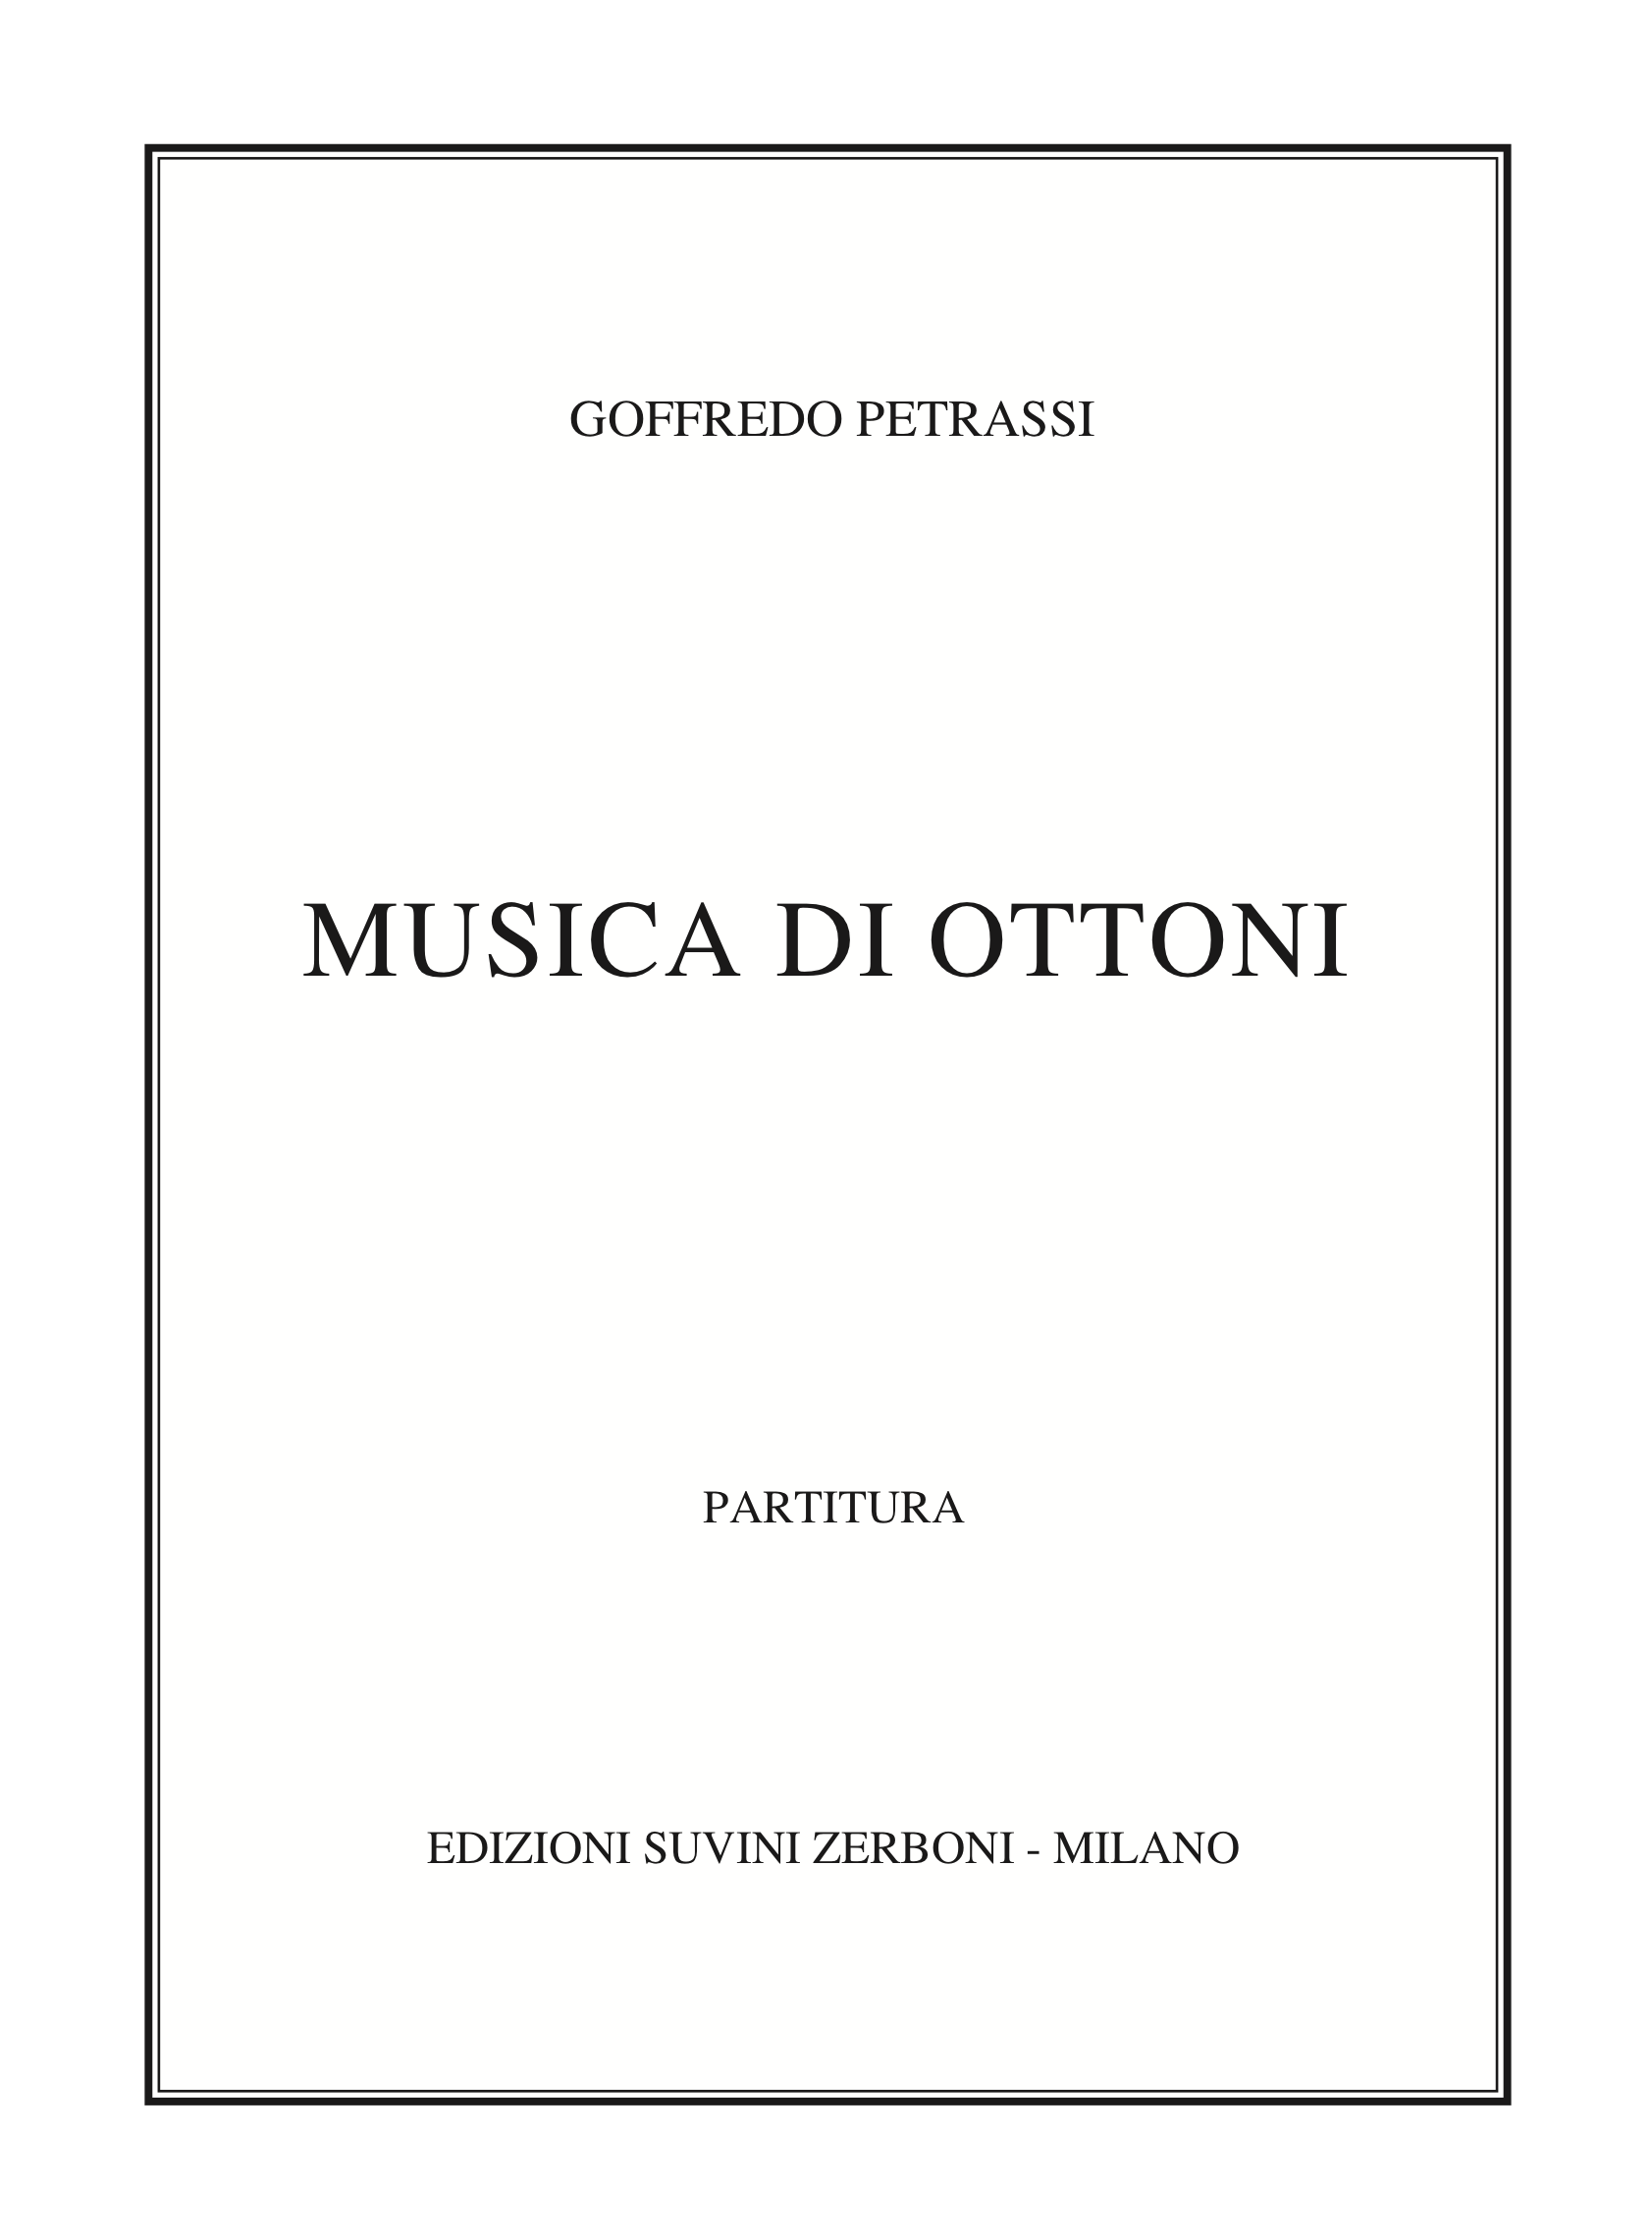 Musica di ottoni_Petrassi 1